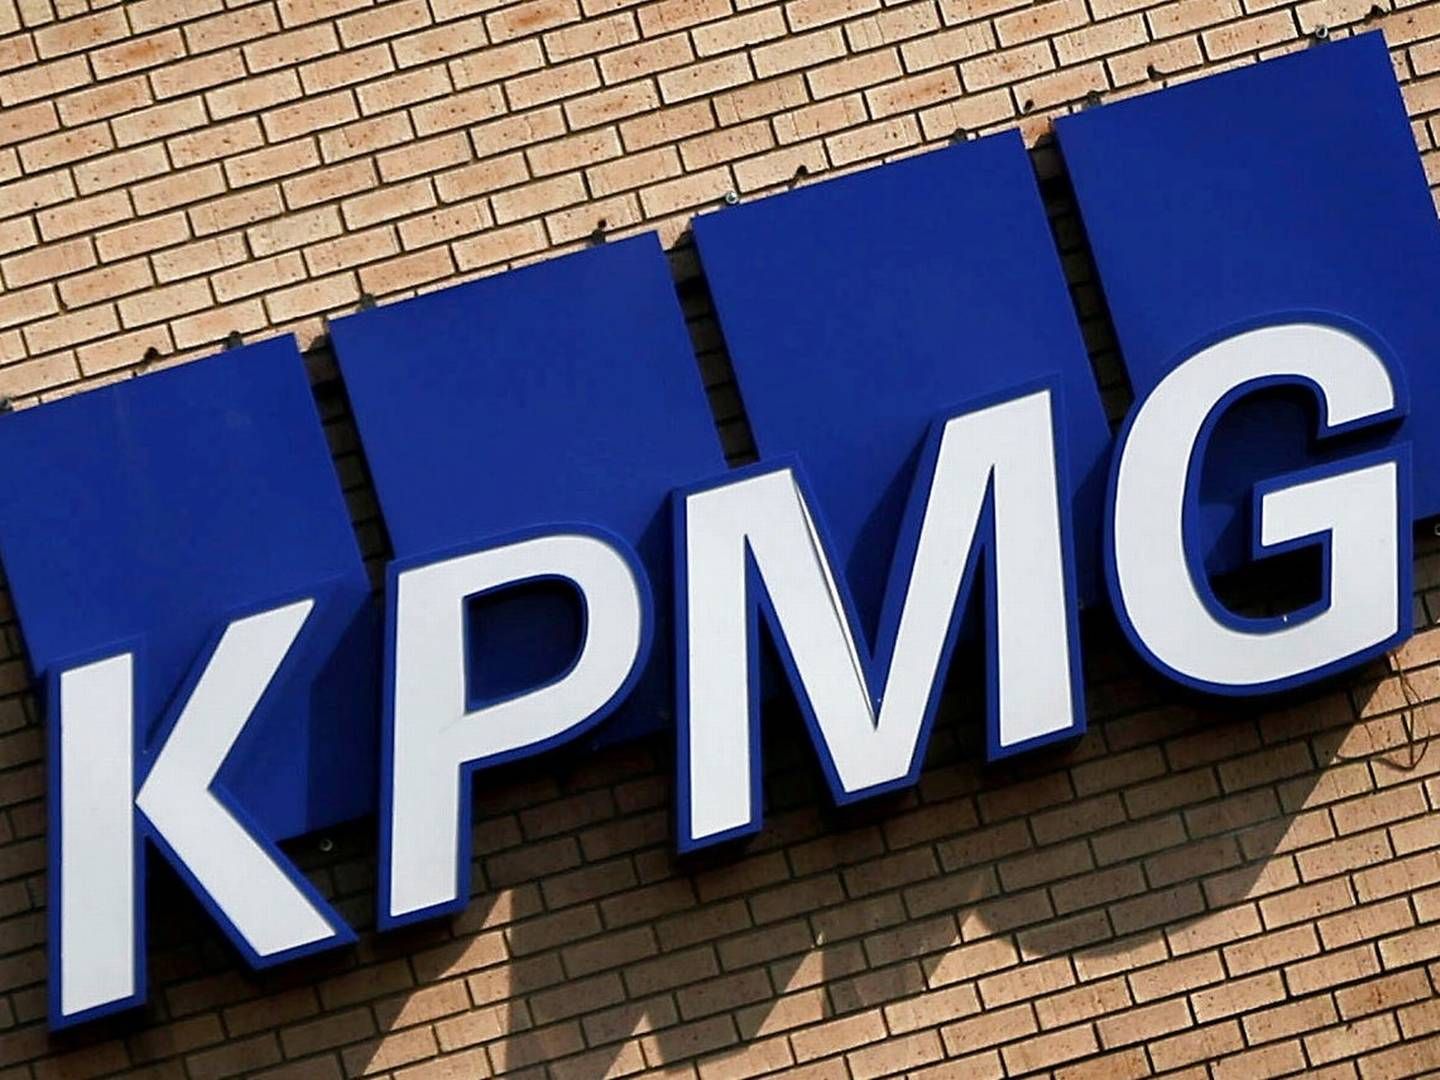 KPMG Law Advokatfirma blev stiftet sidste år som et selvstændigt firma, da revisionshuse ikke må eje advokatfirmaer i Danmark. | Foto: Siphiwe Sibeko/Reuters/Ritzau Scanpix